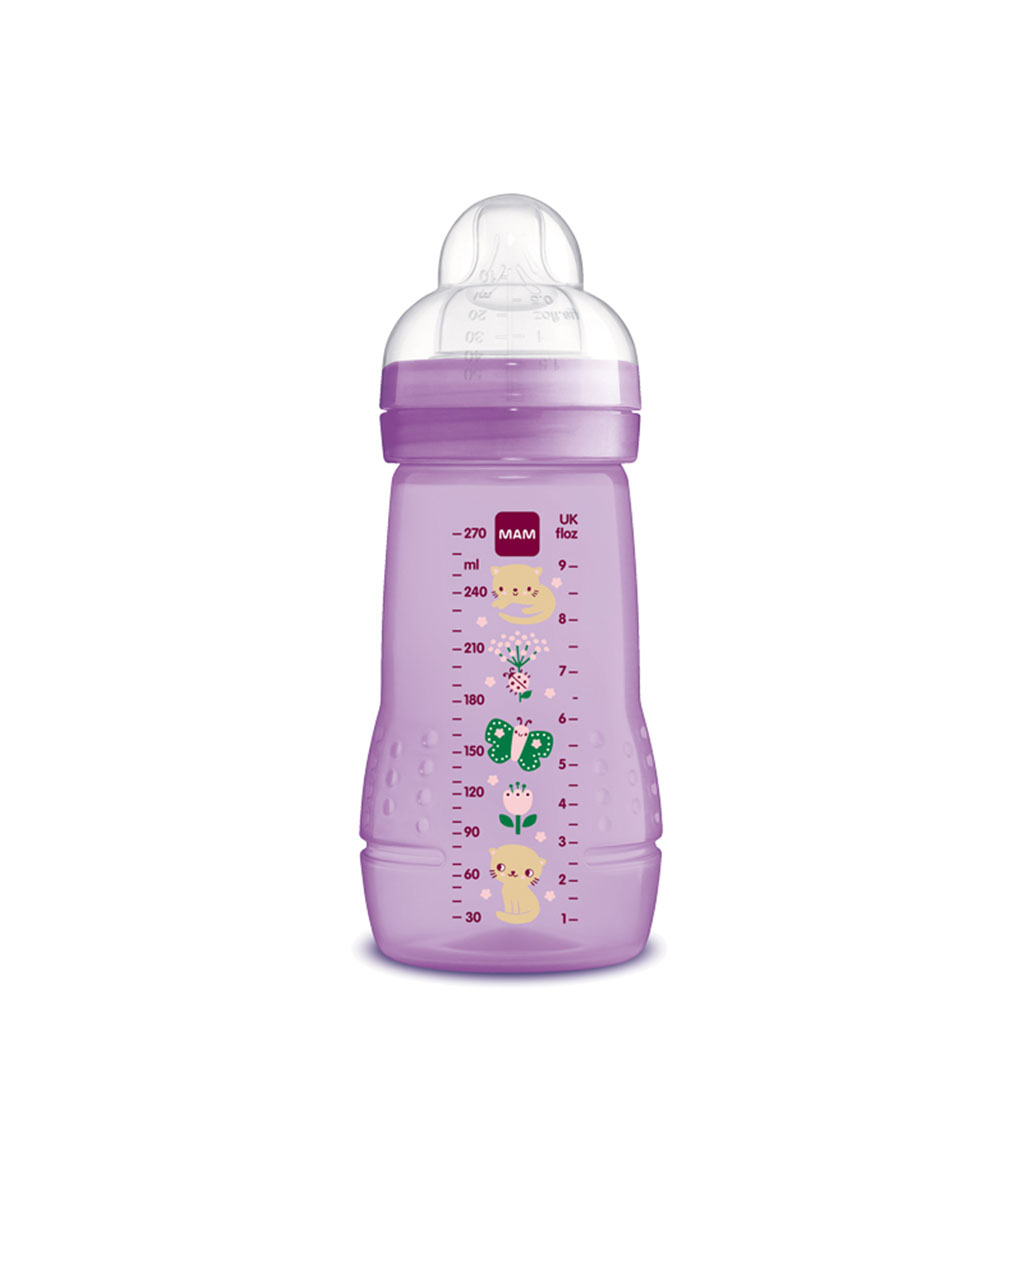 Mam μπιμπερό easy active baby bottle 270ml girl 2+ μηνών